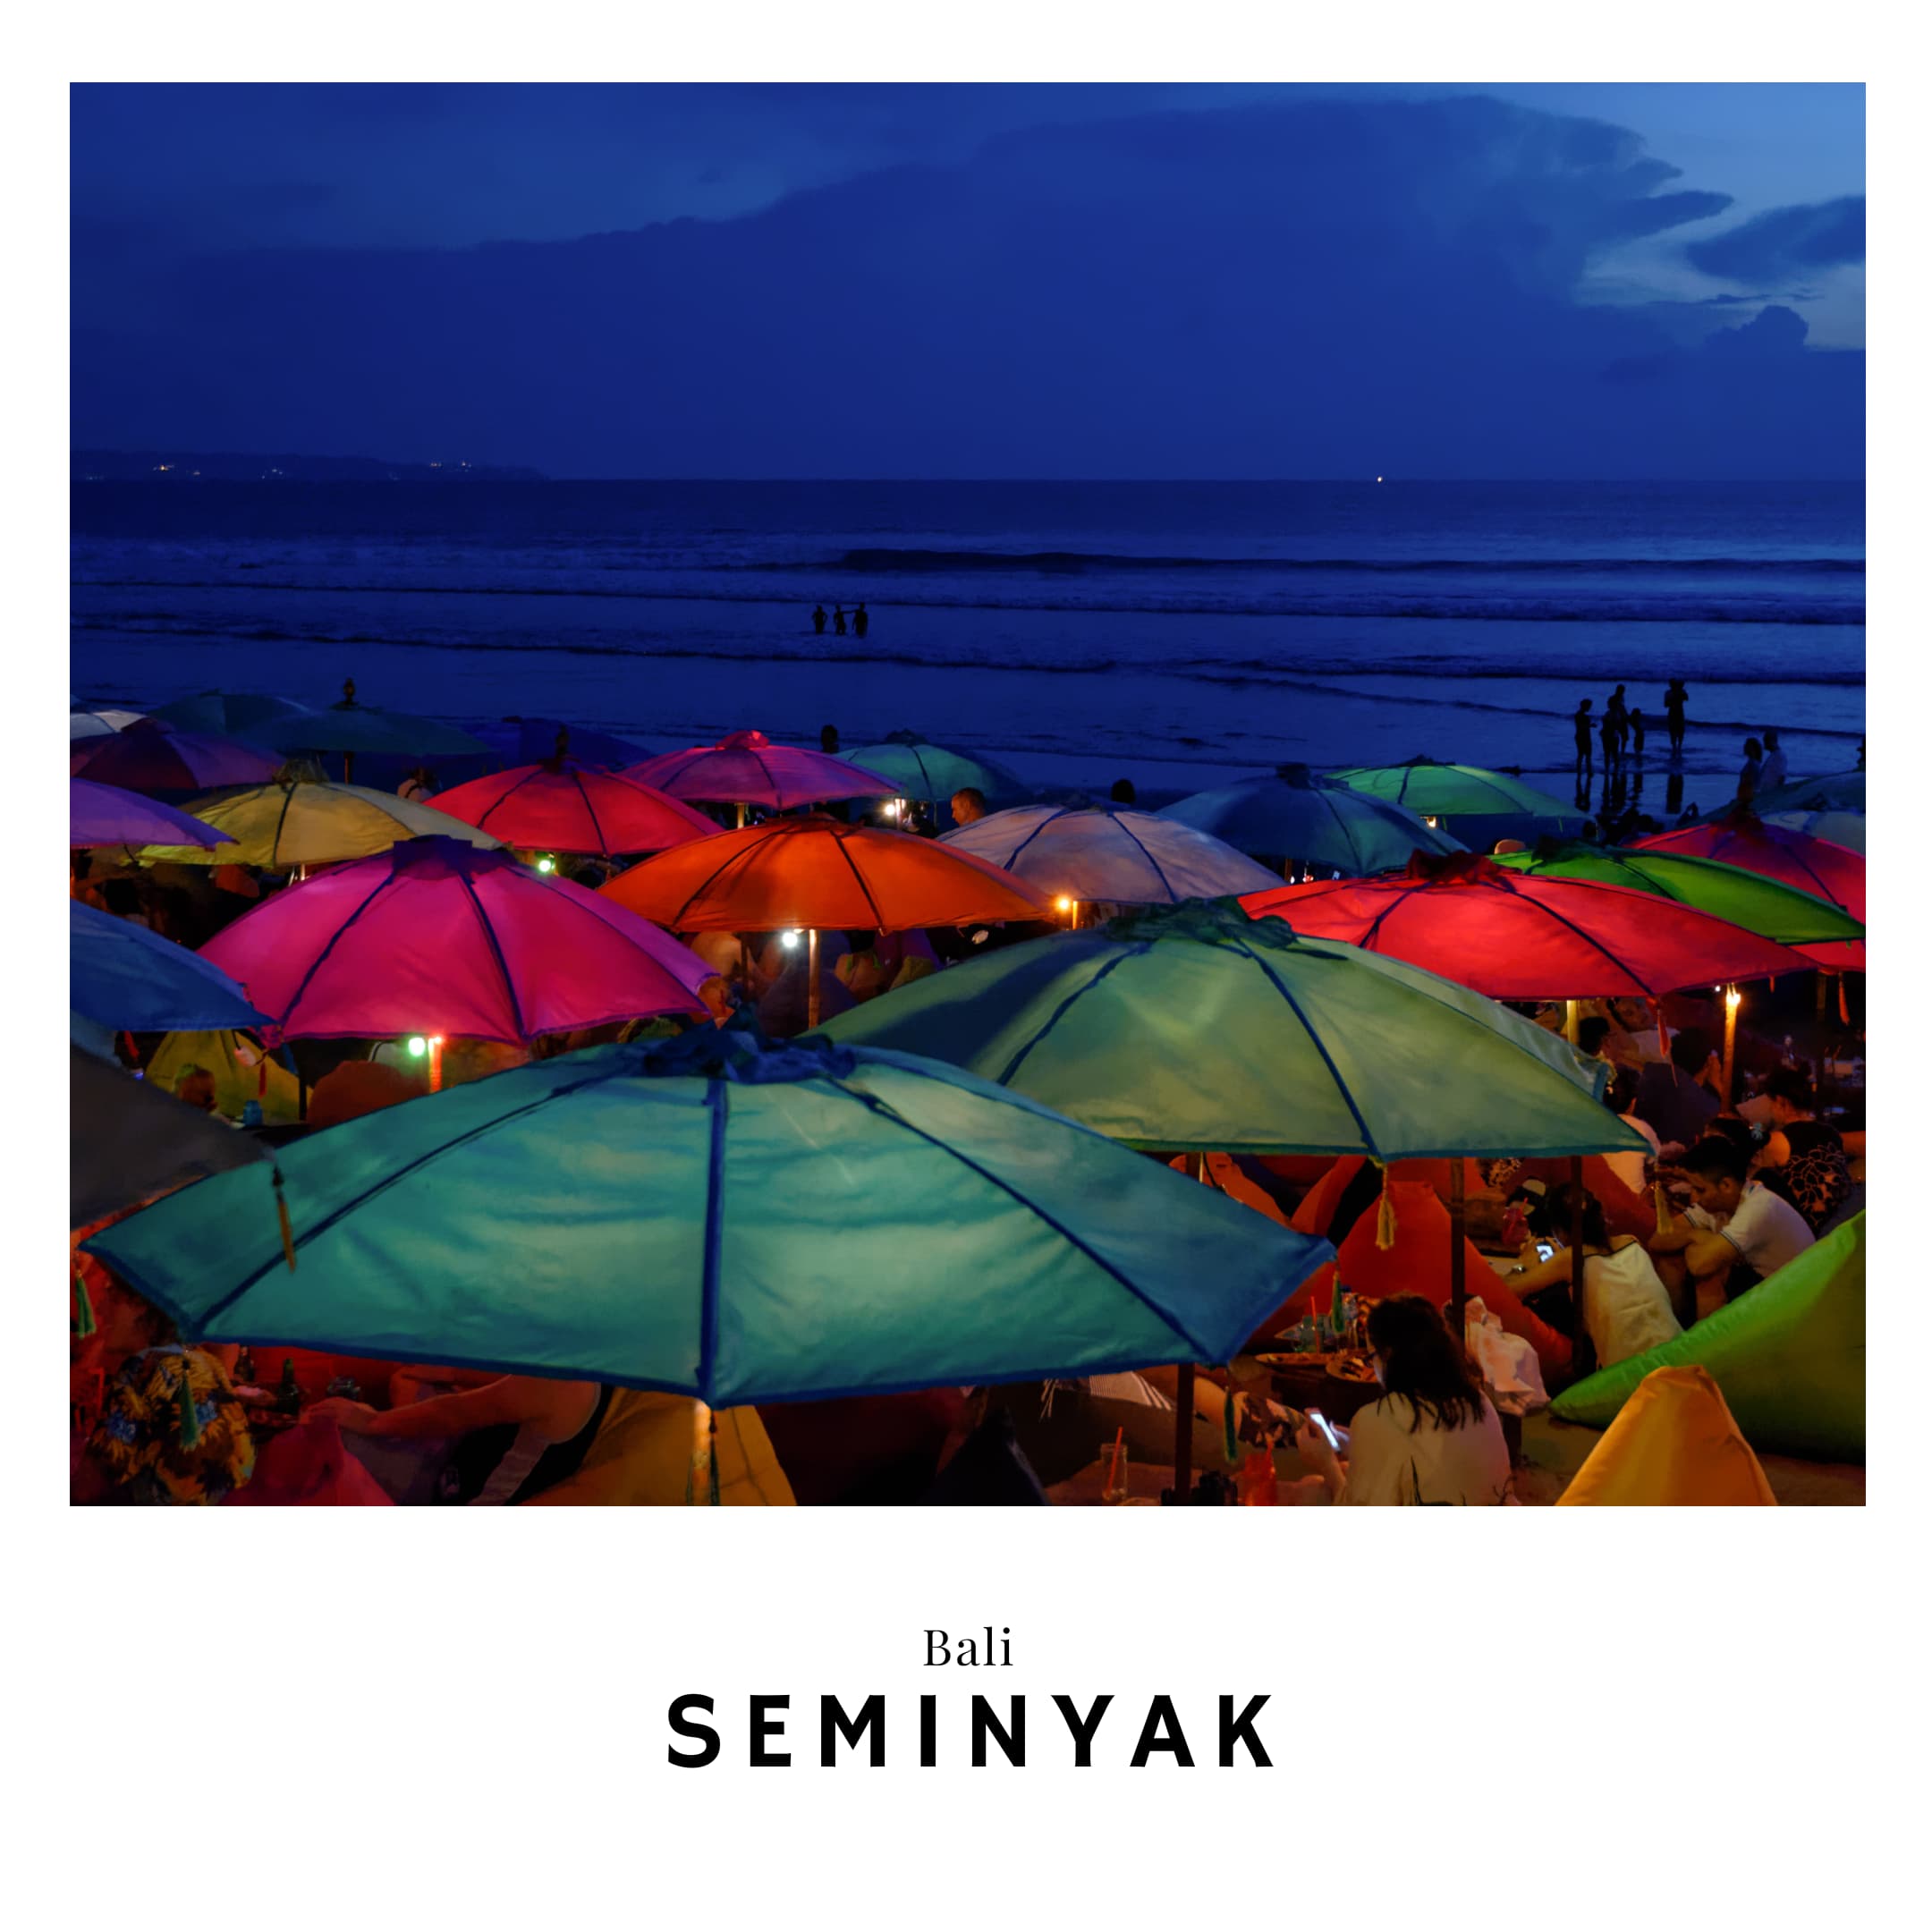 Link to Seminyak Travel Guide